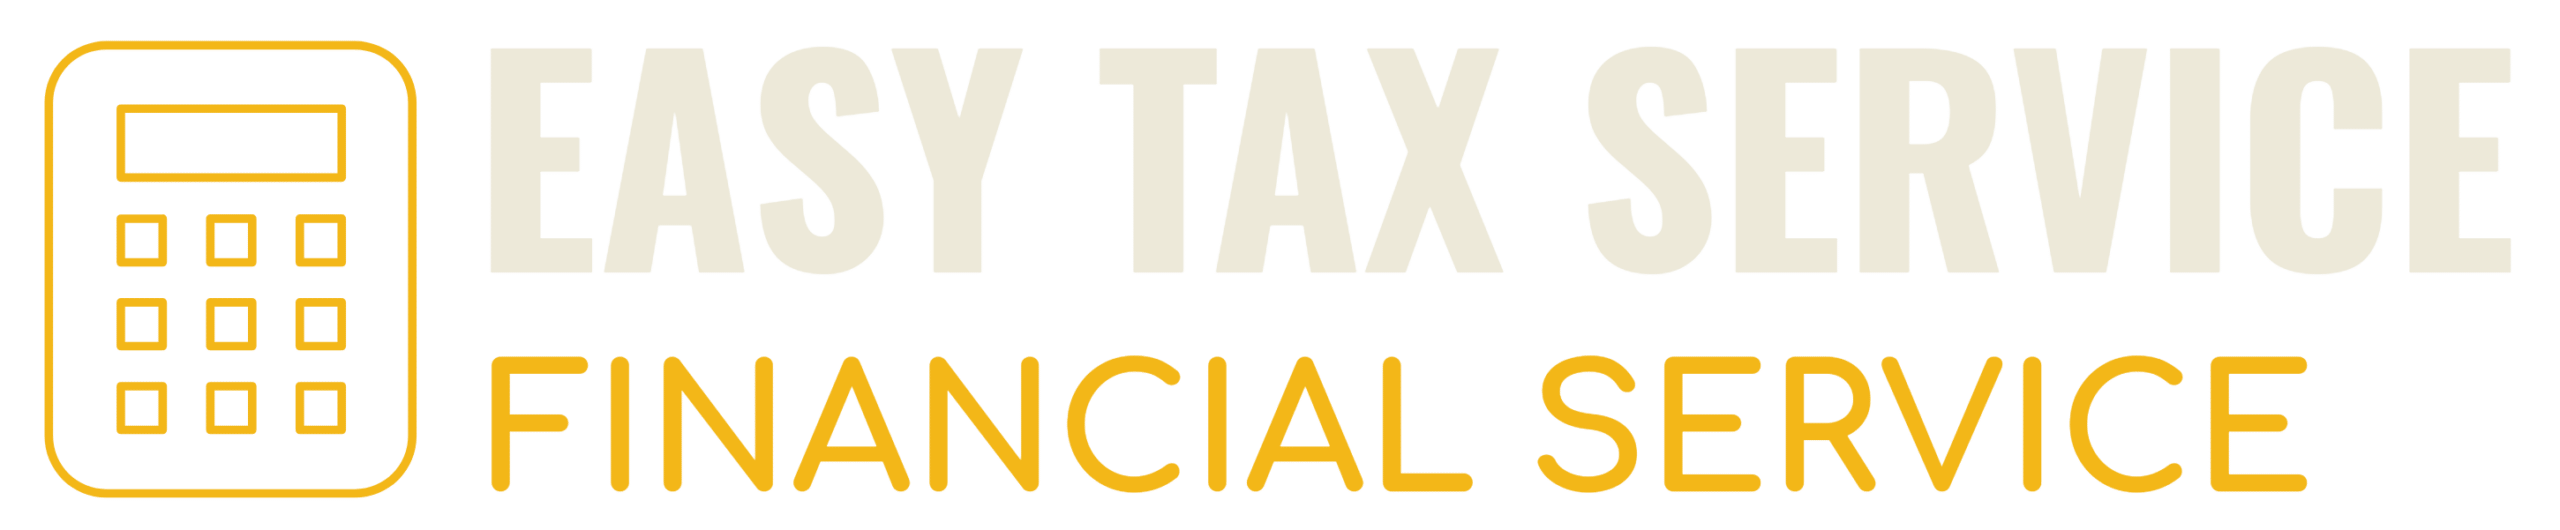 Déclaration d'impôts Suisse 2021